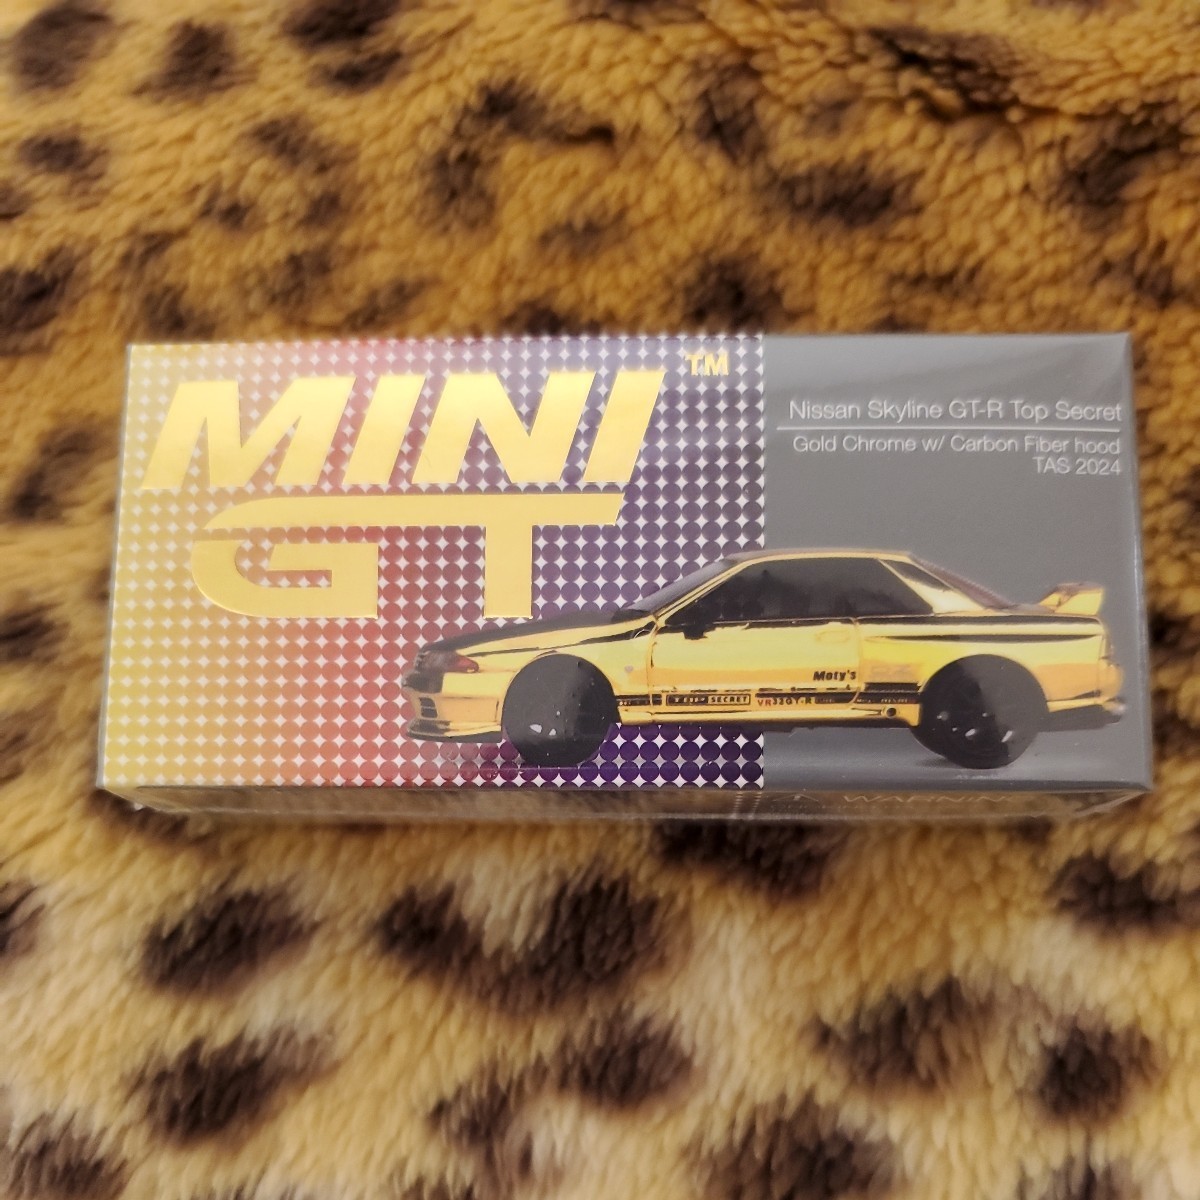 東京オートサロン限定 MINI GT 日産 スカイライン GT-R Top Secret ゴールド カーボン ボンネット 671 mini gt R32 トップシークレット_画像1